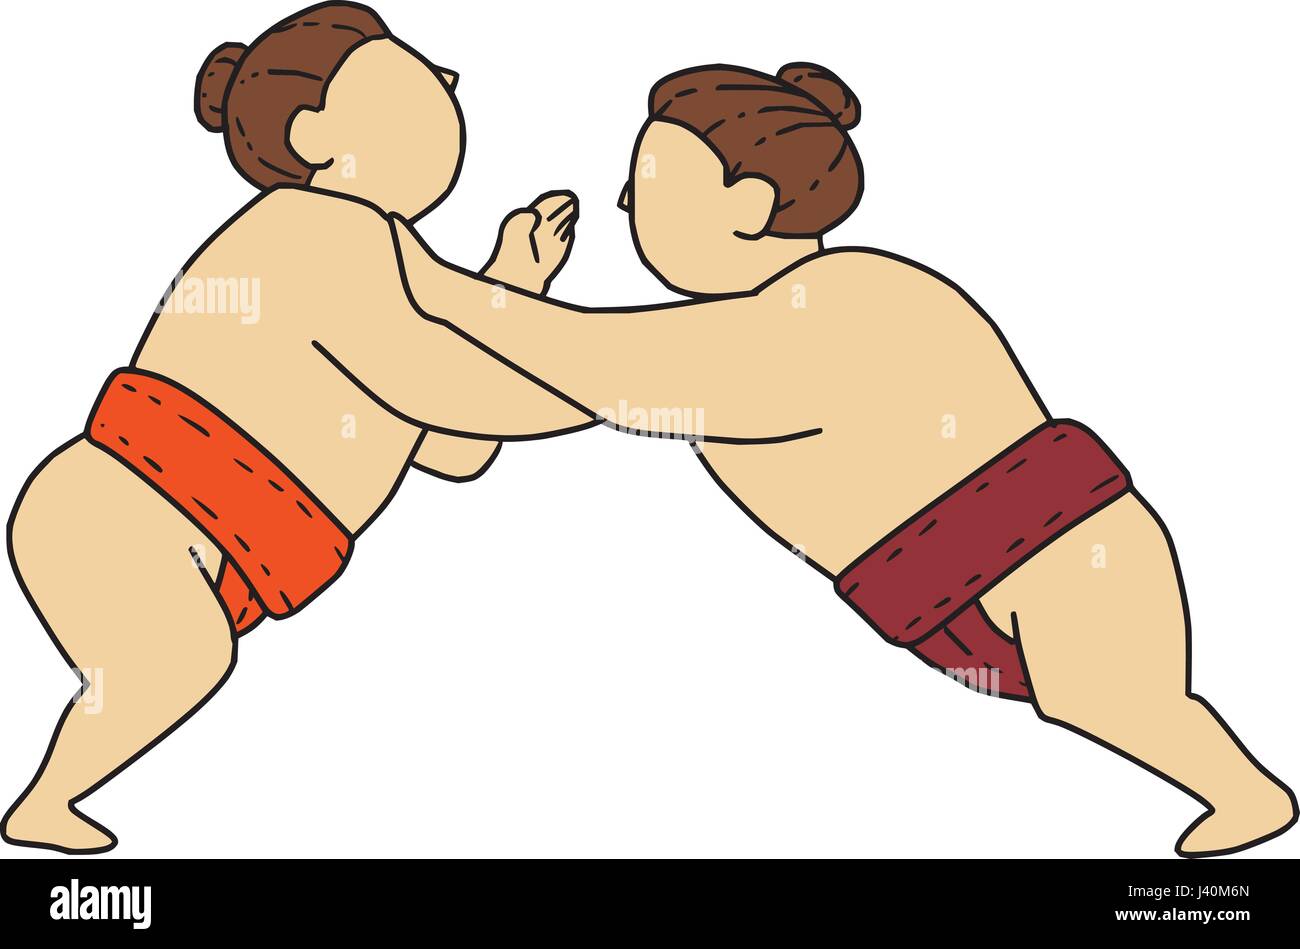 Mono stile linea illustrazione di un giapponese rikishi o lottatore, impegnandosi in un match bout di sumo o sumo wrestling, competitiva full-contact wrestling Illustrazione Vettoriale